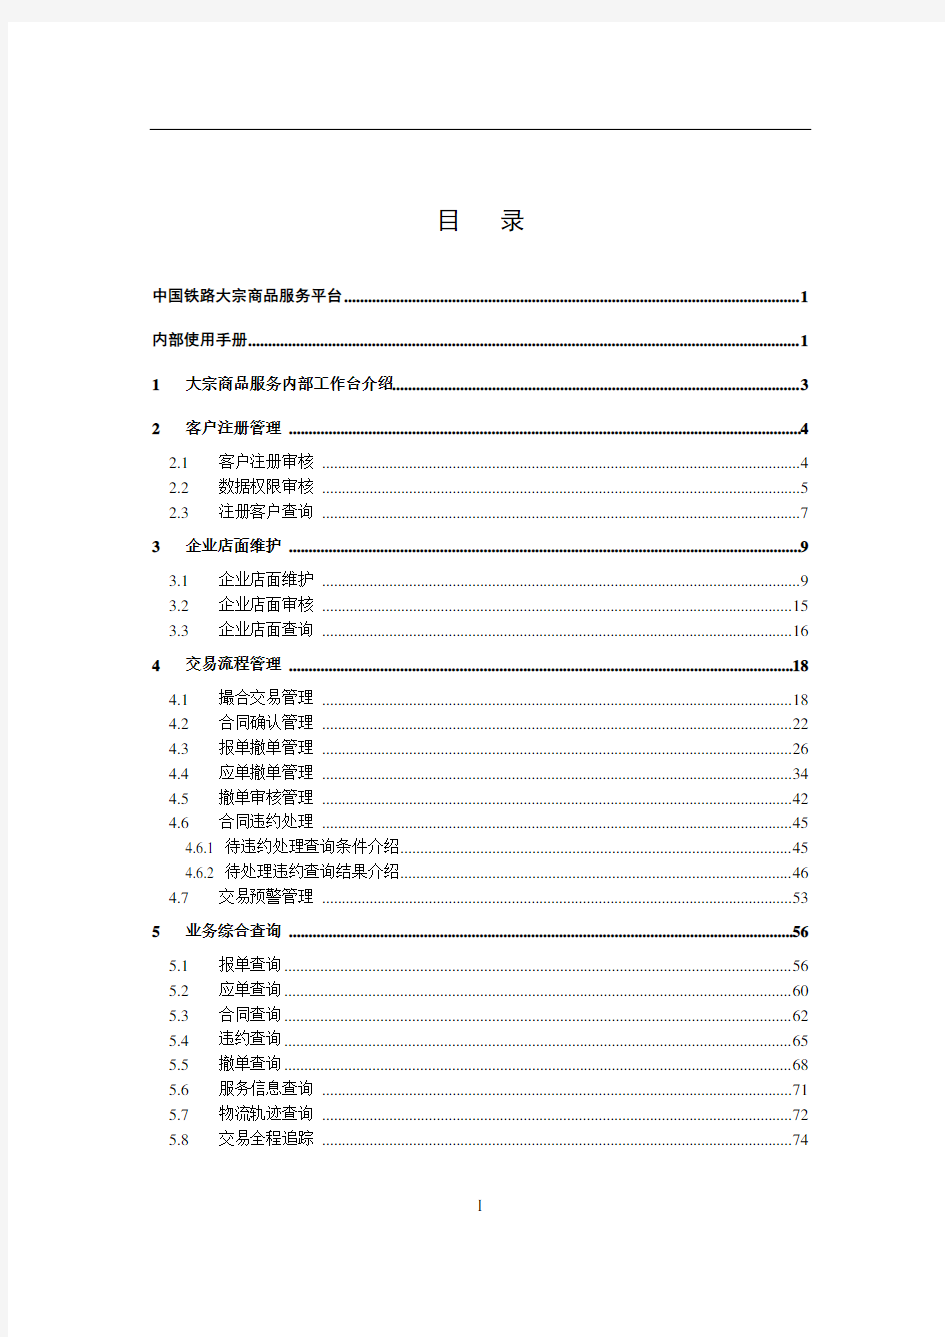 中国铁路95306大宗交易平台内部使用手册